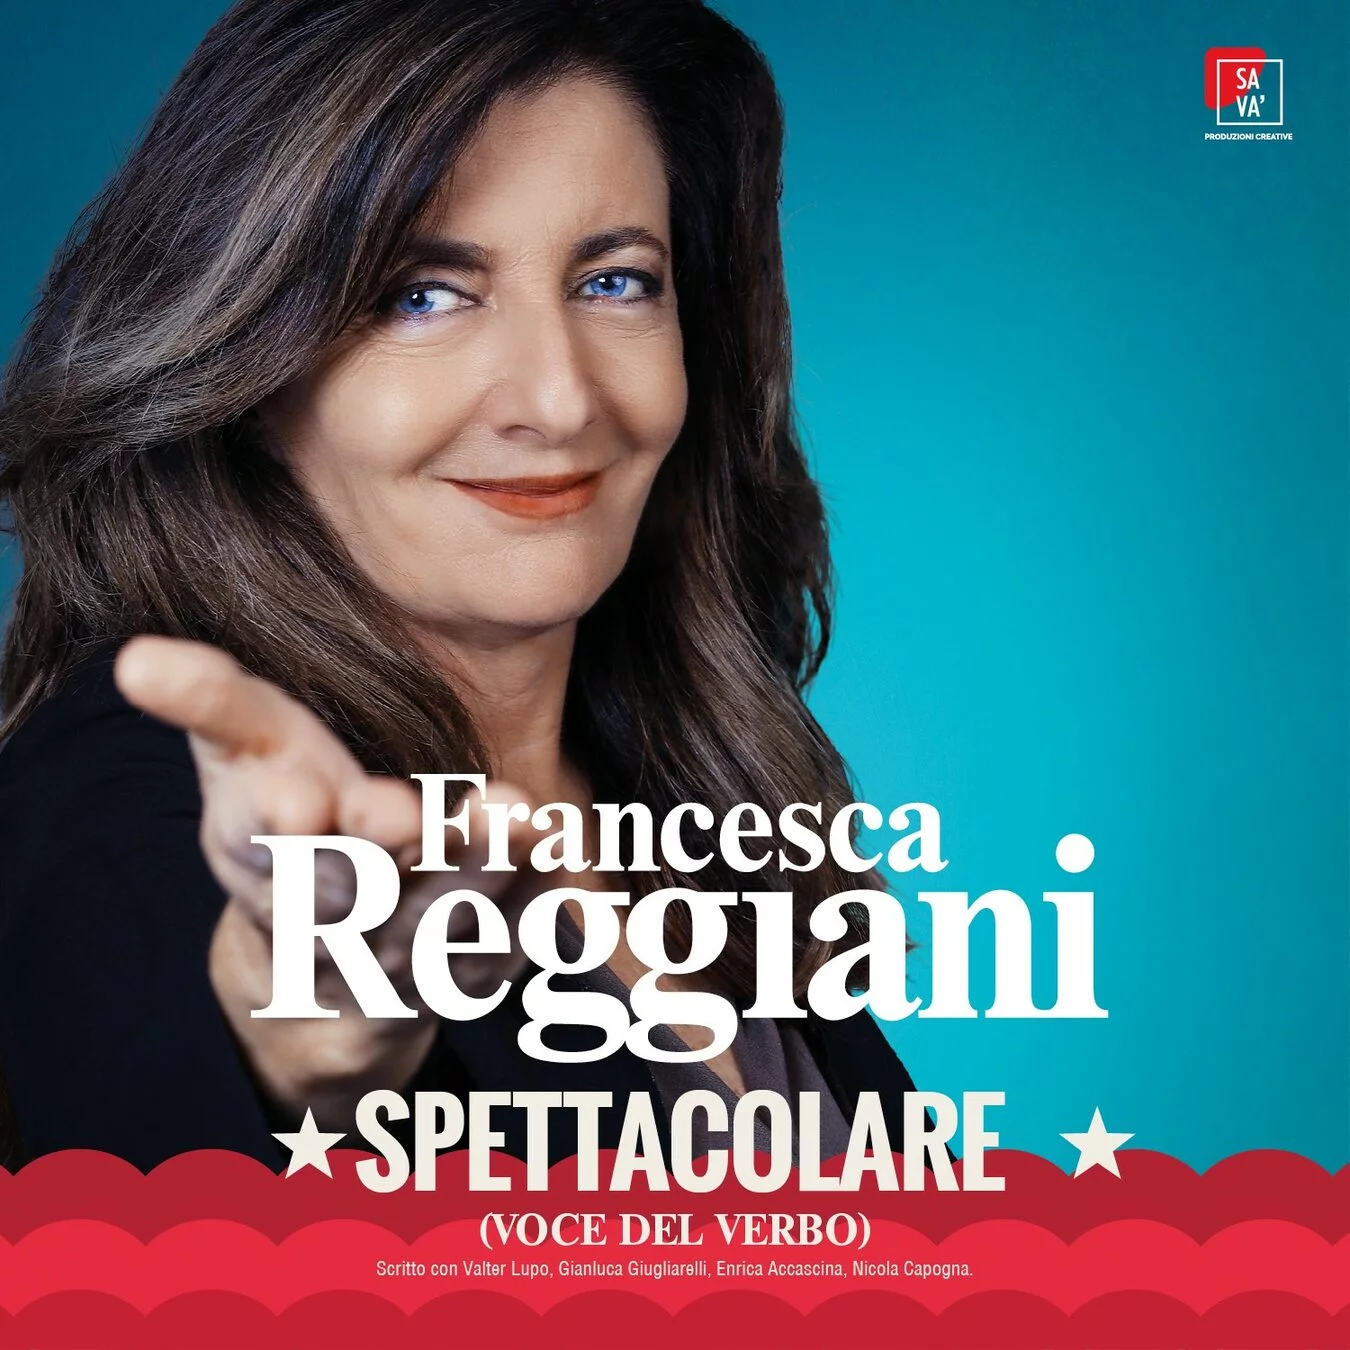 Francesca Reggiani. Spettacolare (voce del verbo)